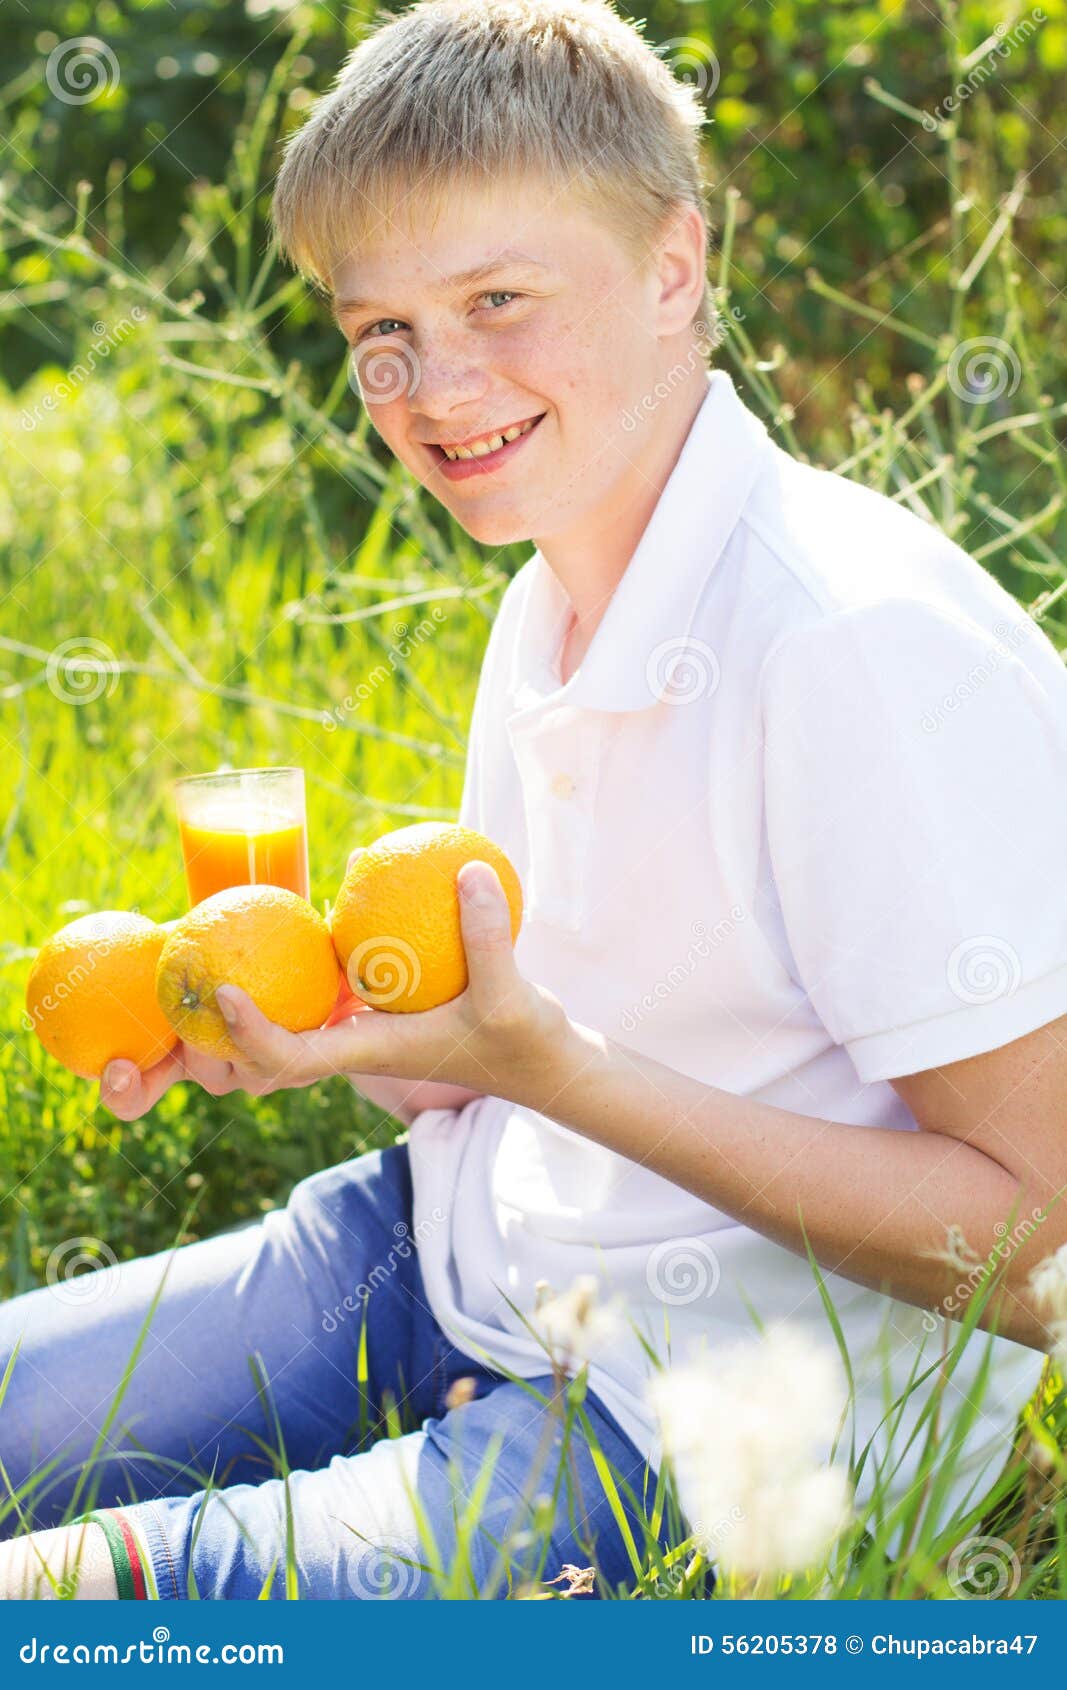 El muchacho del adolescente se está sosteniendo de cristal con el zumo de naranja. El retrato del muchacho sonriente rubio del adolescente con las pecas en su cara se está sosteniendo de cristal con el zumo de naranja y las frutas, tiempo de verano